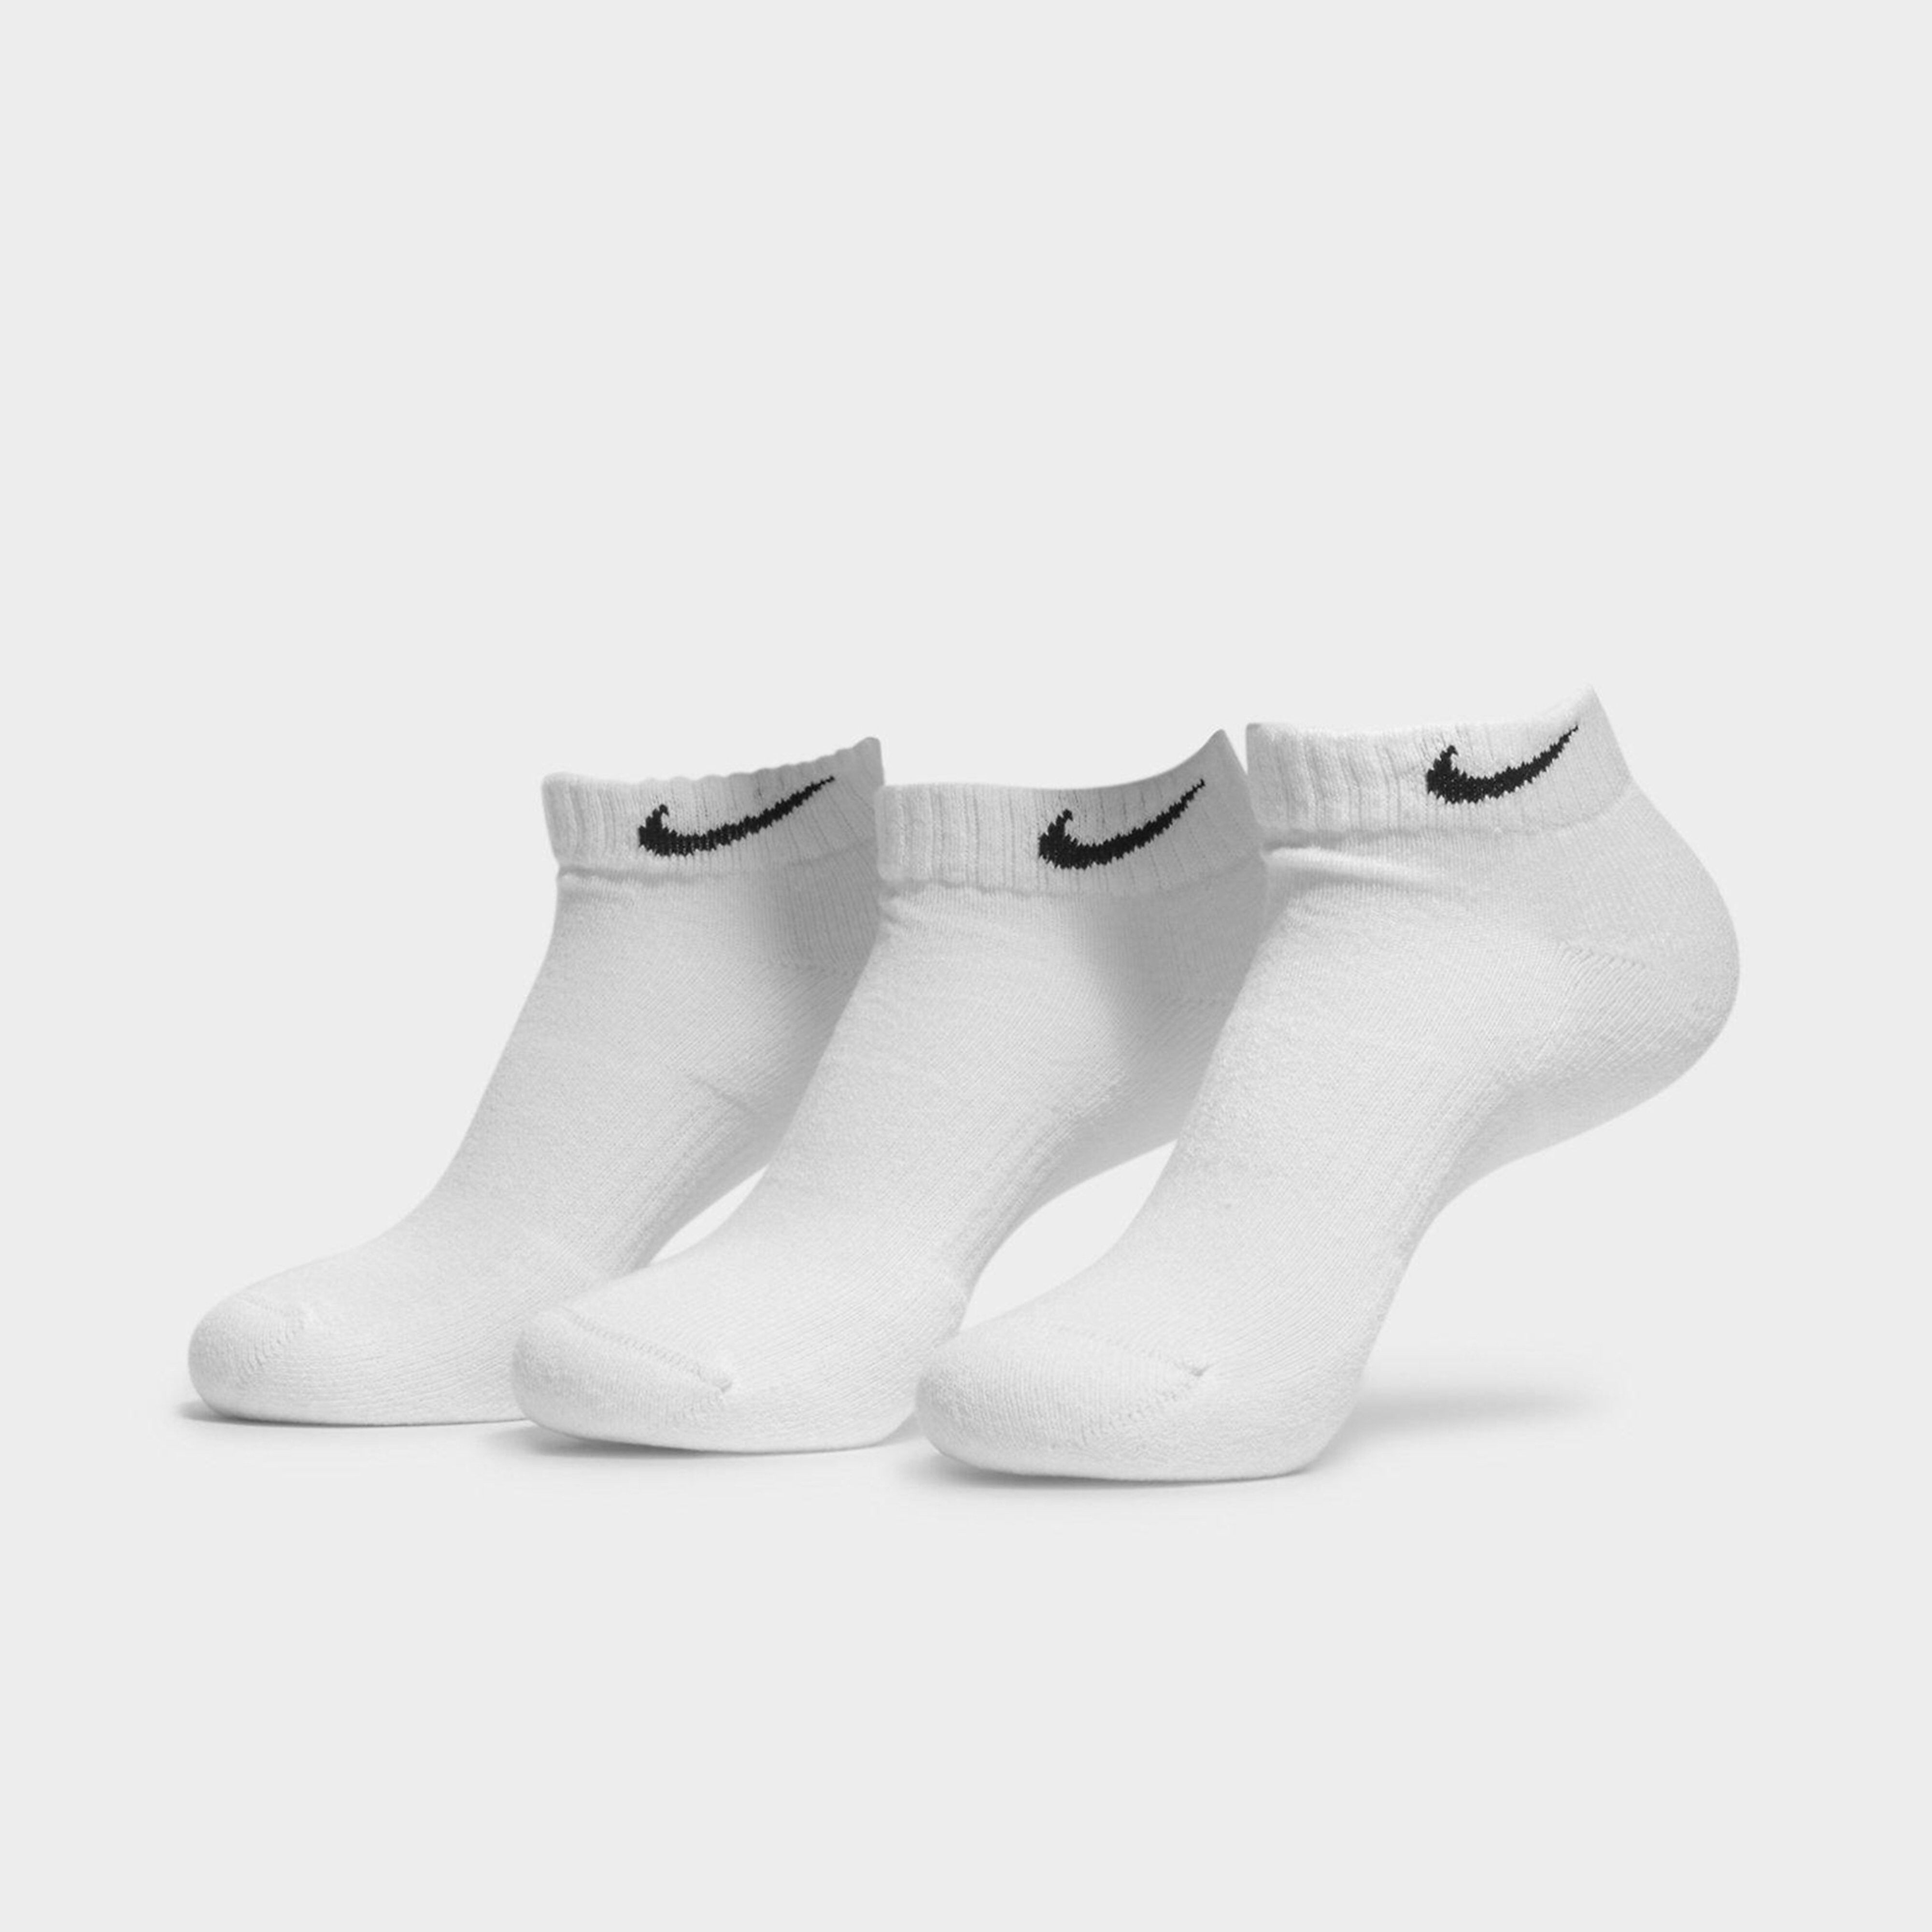 Nike Everyday Cushion Low Training Socks - WHITE  size: M